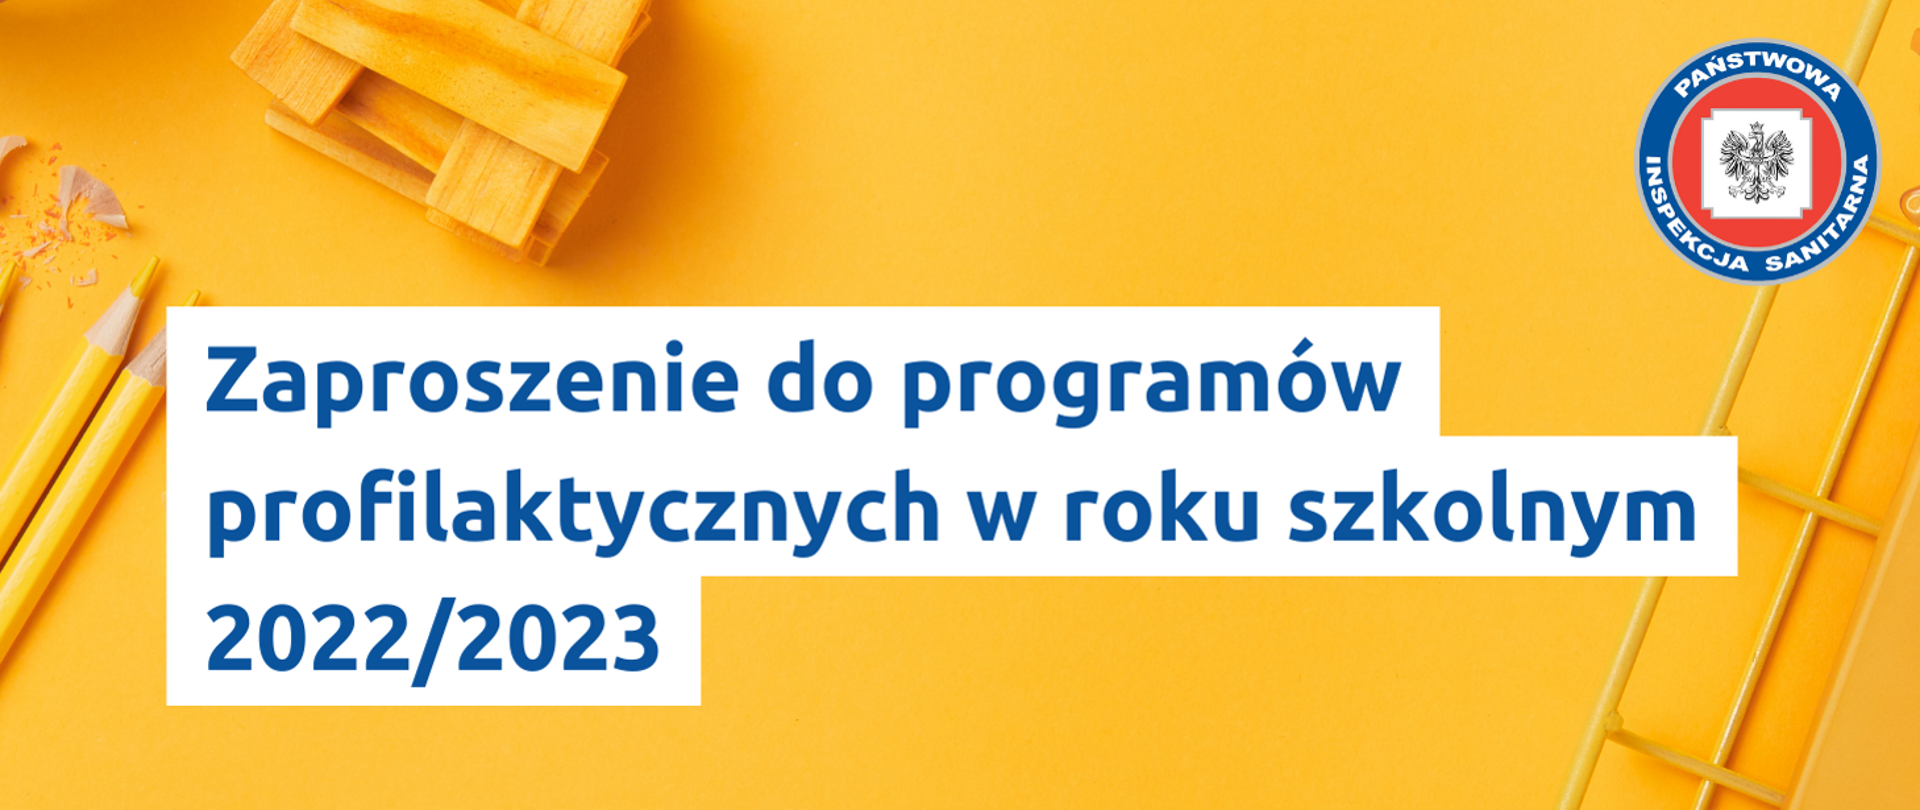 Programy zaproszenie 2022-2023